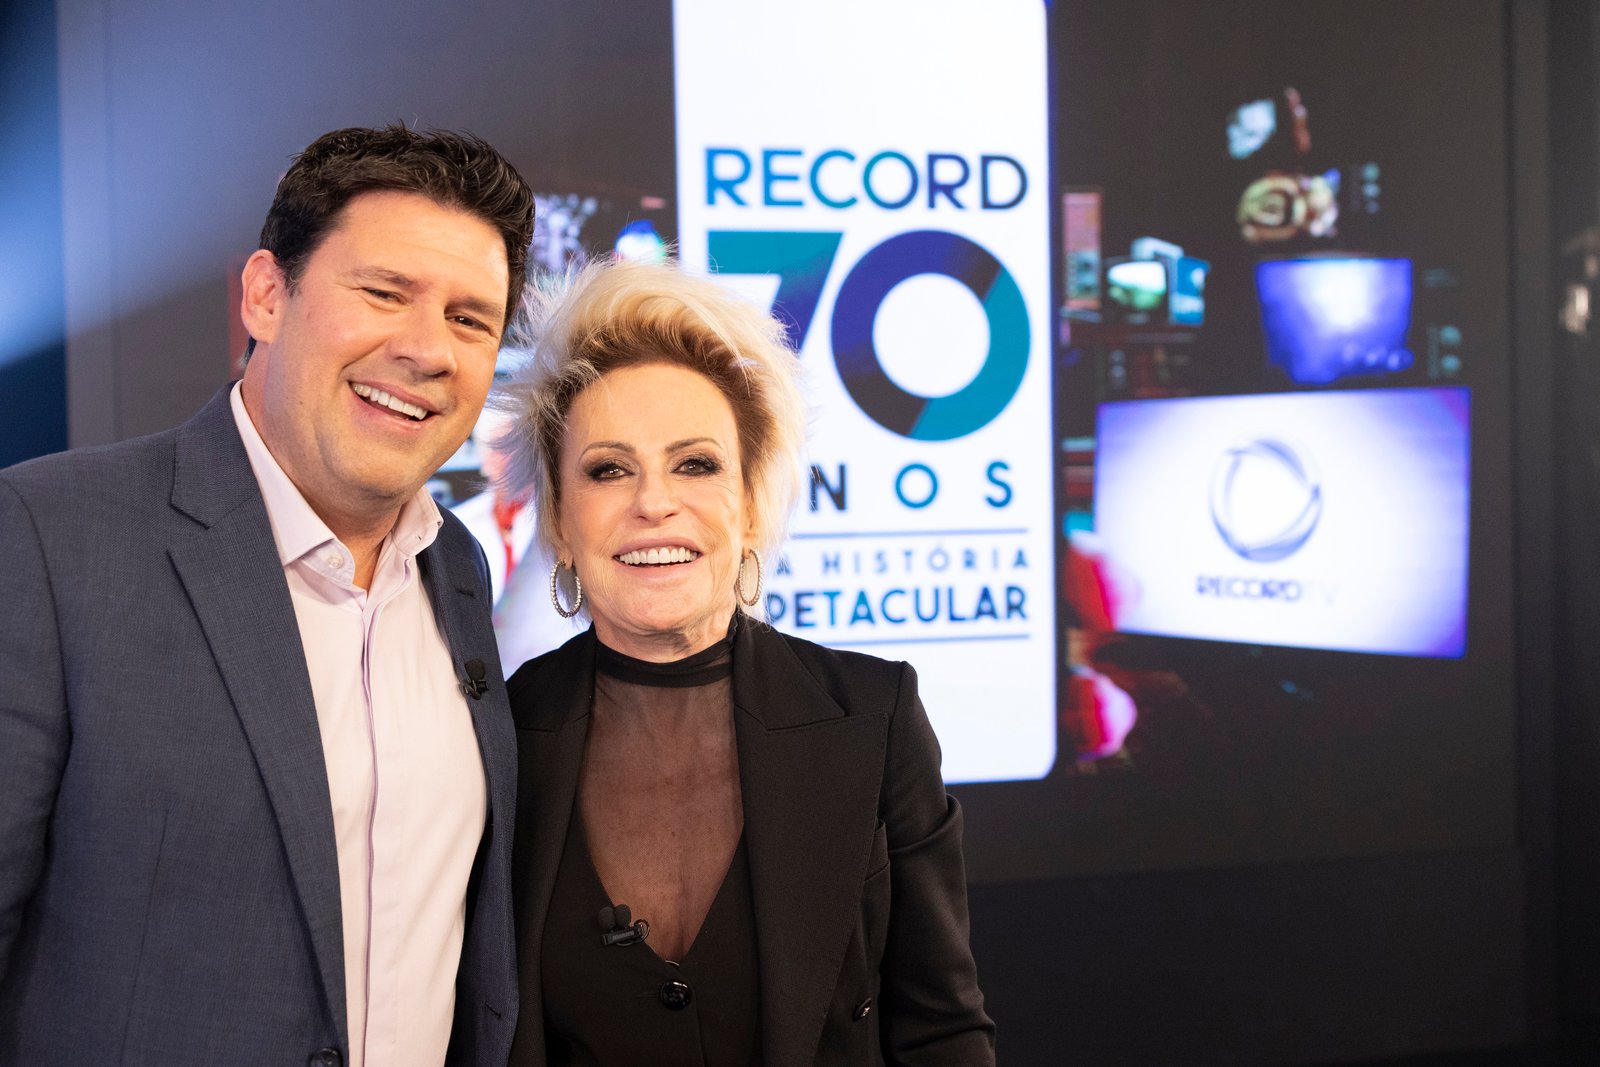 Ana Maria Braga na Record para homenagem aos 70 anos da emissora